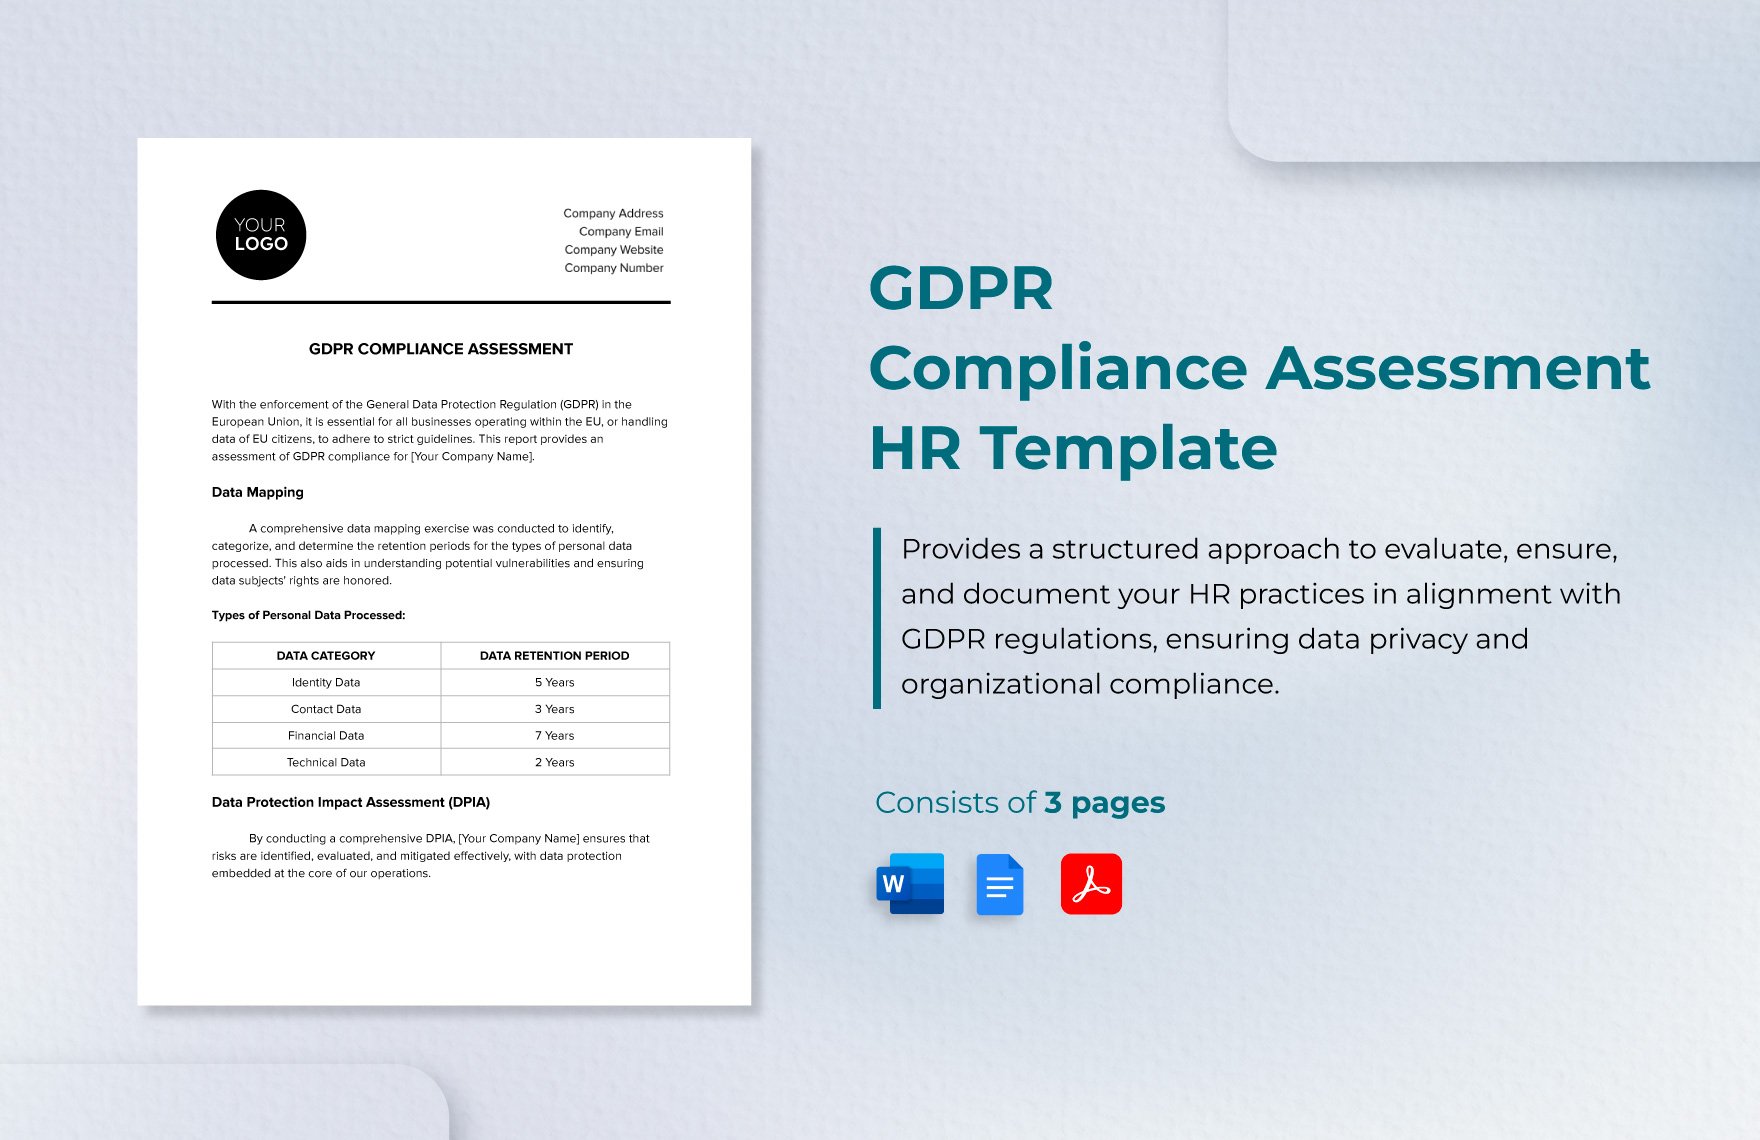 GDPR Compliance Assessment HR Template